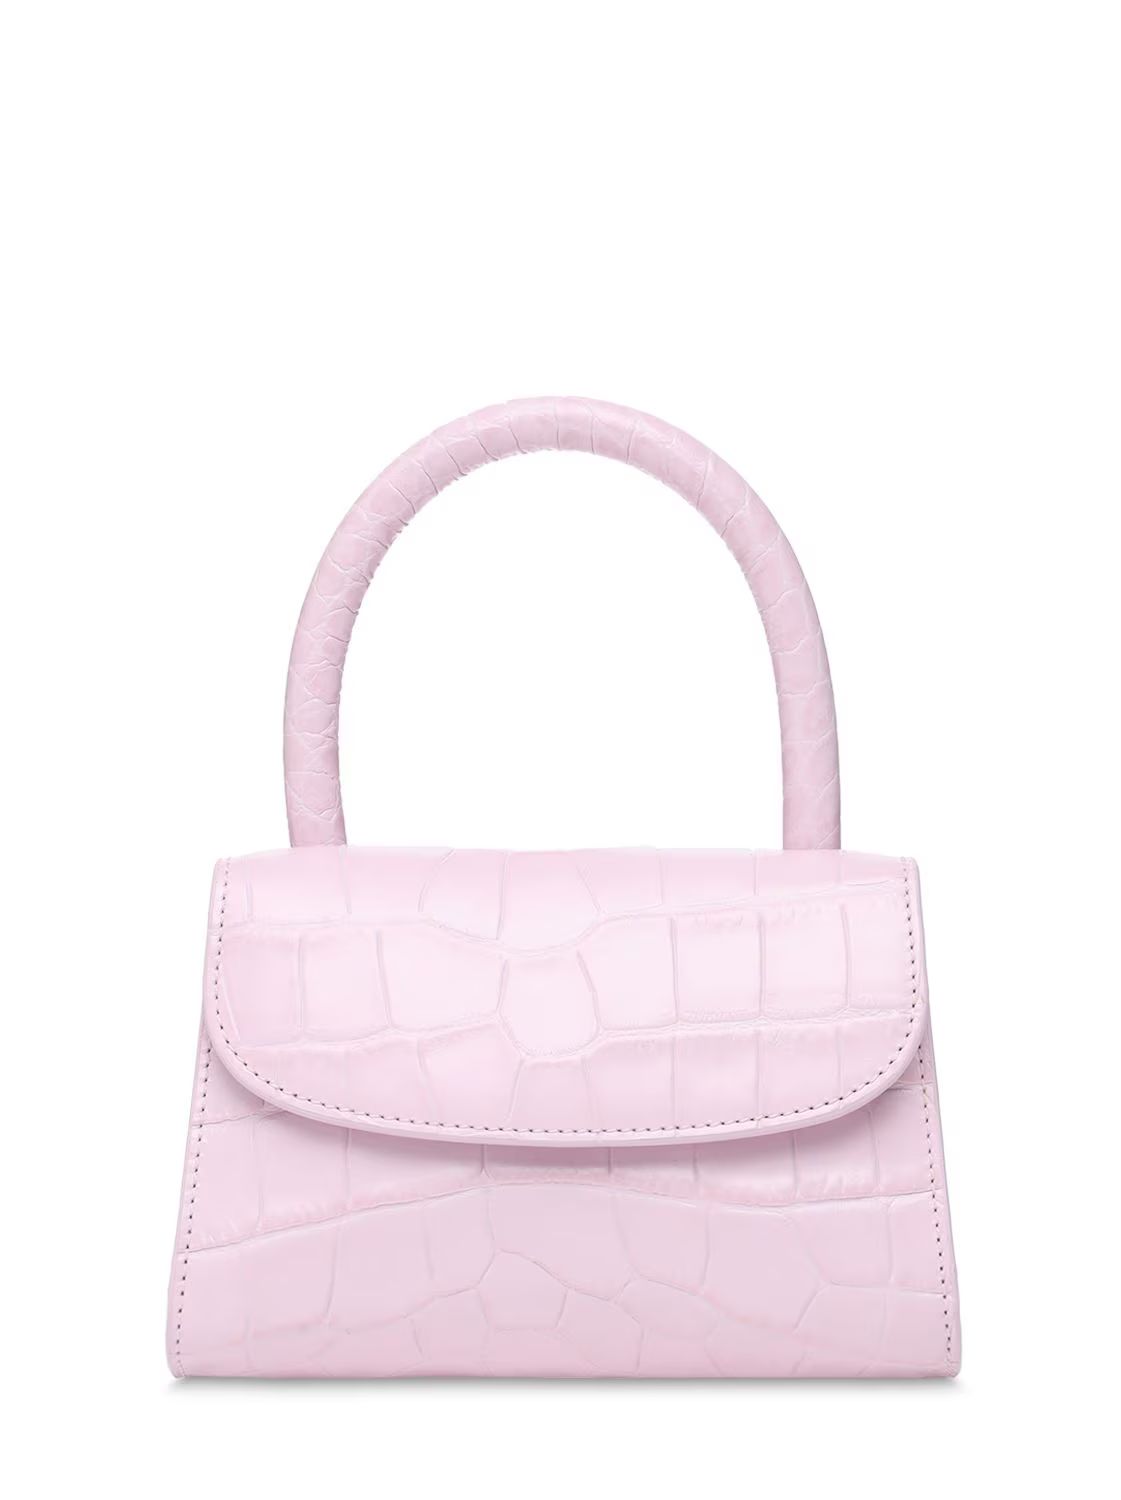 BY FAR - Mini croc embossed leather bag - Pink | Luisaviaroma | Luisaviaroma